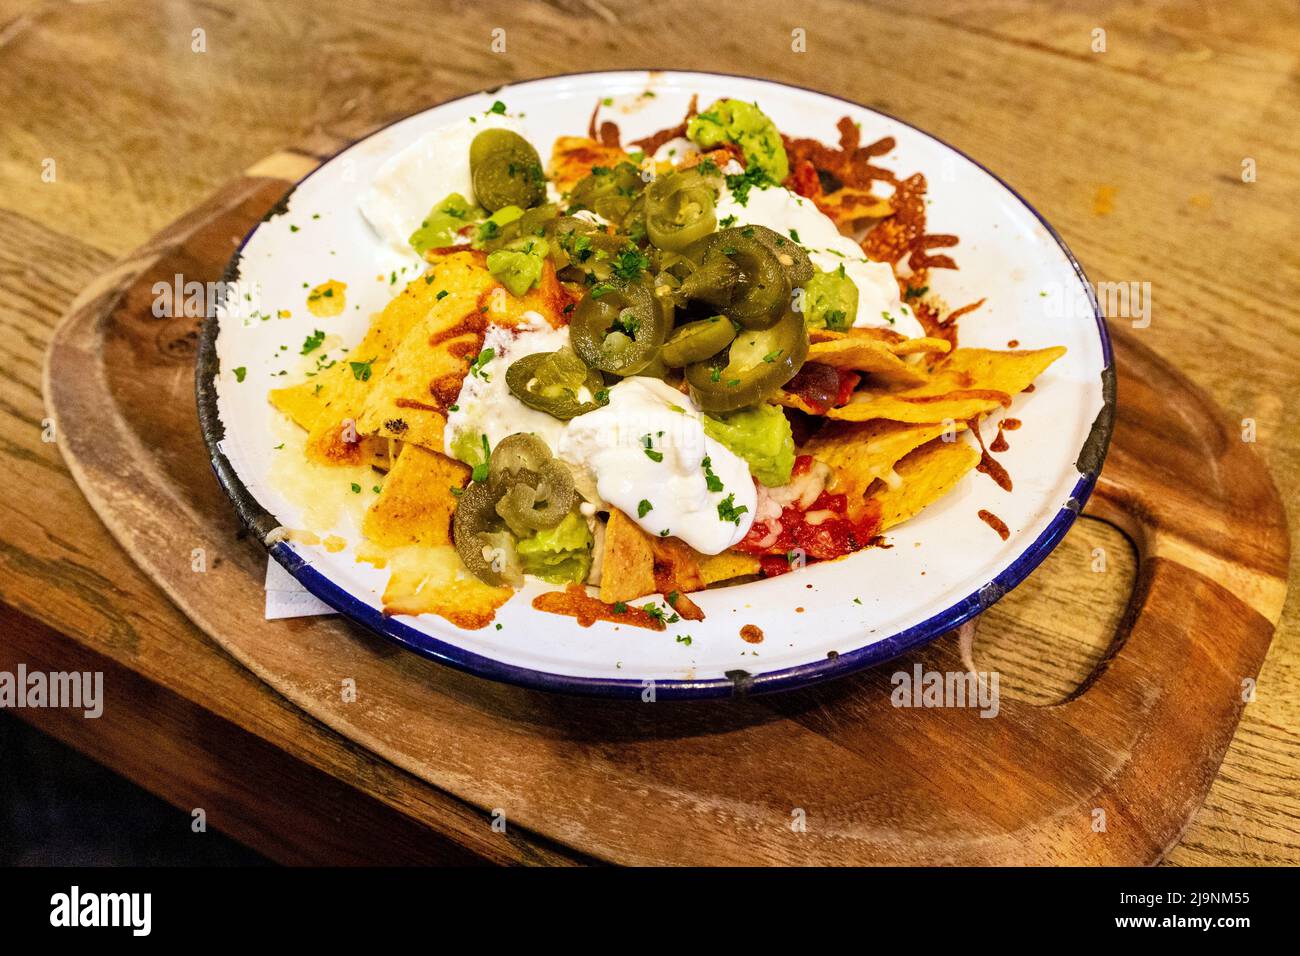 Al pub Old White Horse di Baldock, Hertfordshire, Regno Unito, è stato caricato Nachos con mozzarella, salsa, guacamole, jalapeños e panna acida Foto Stock